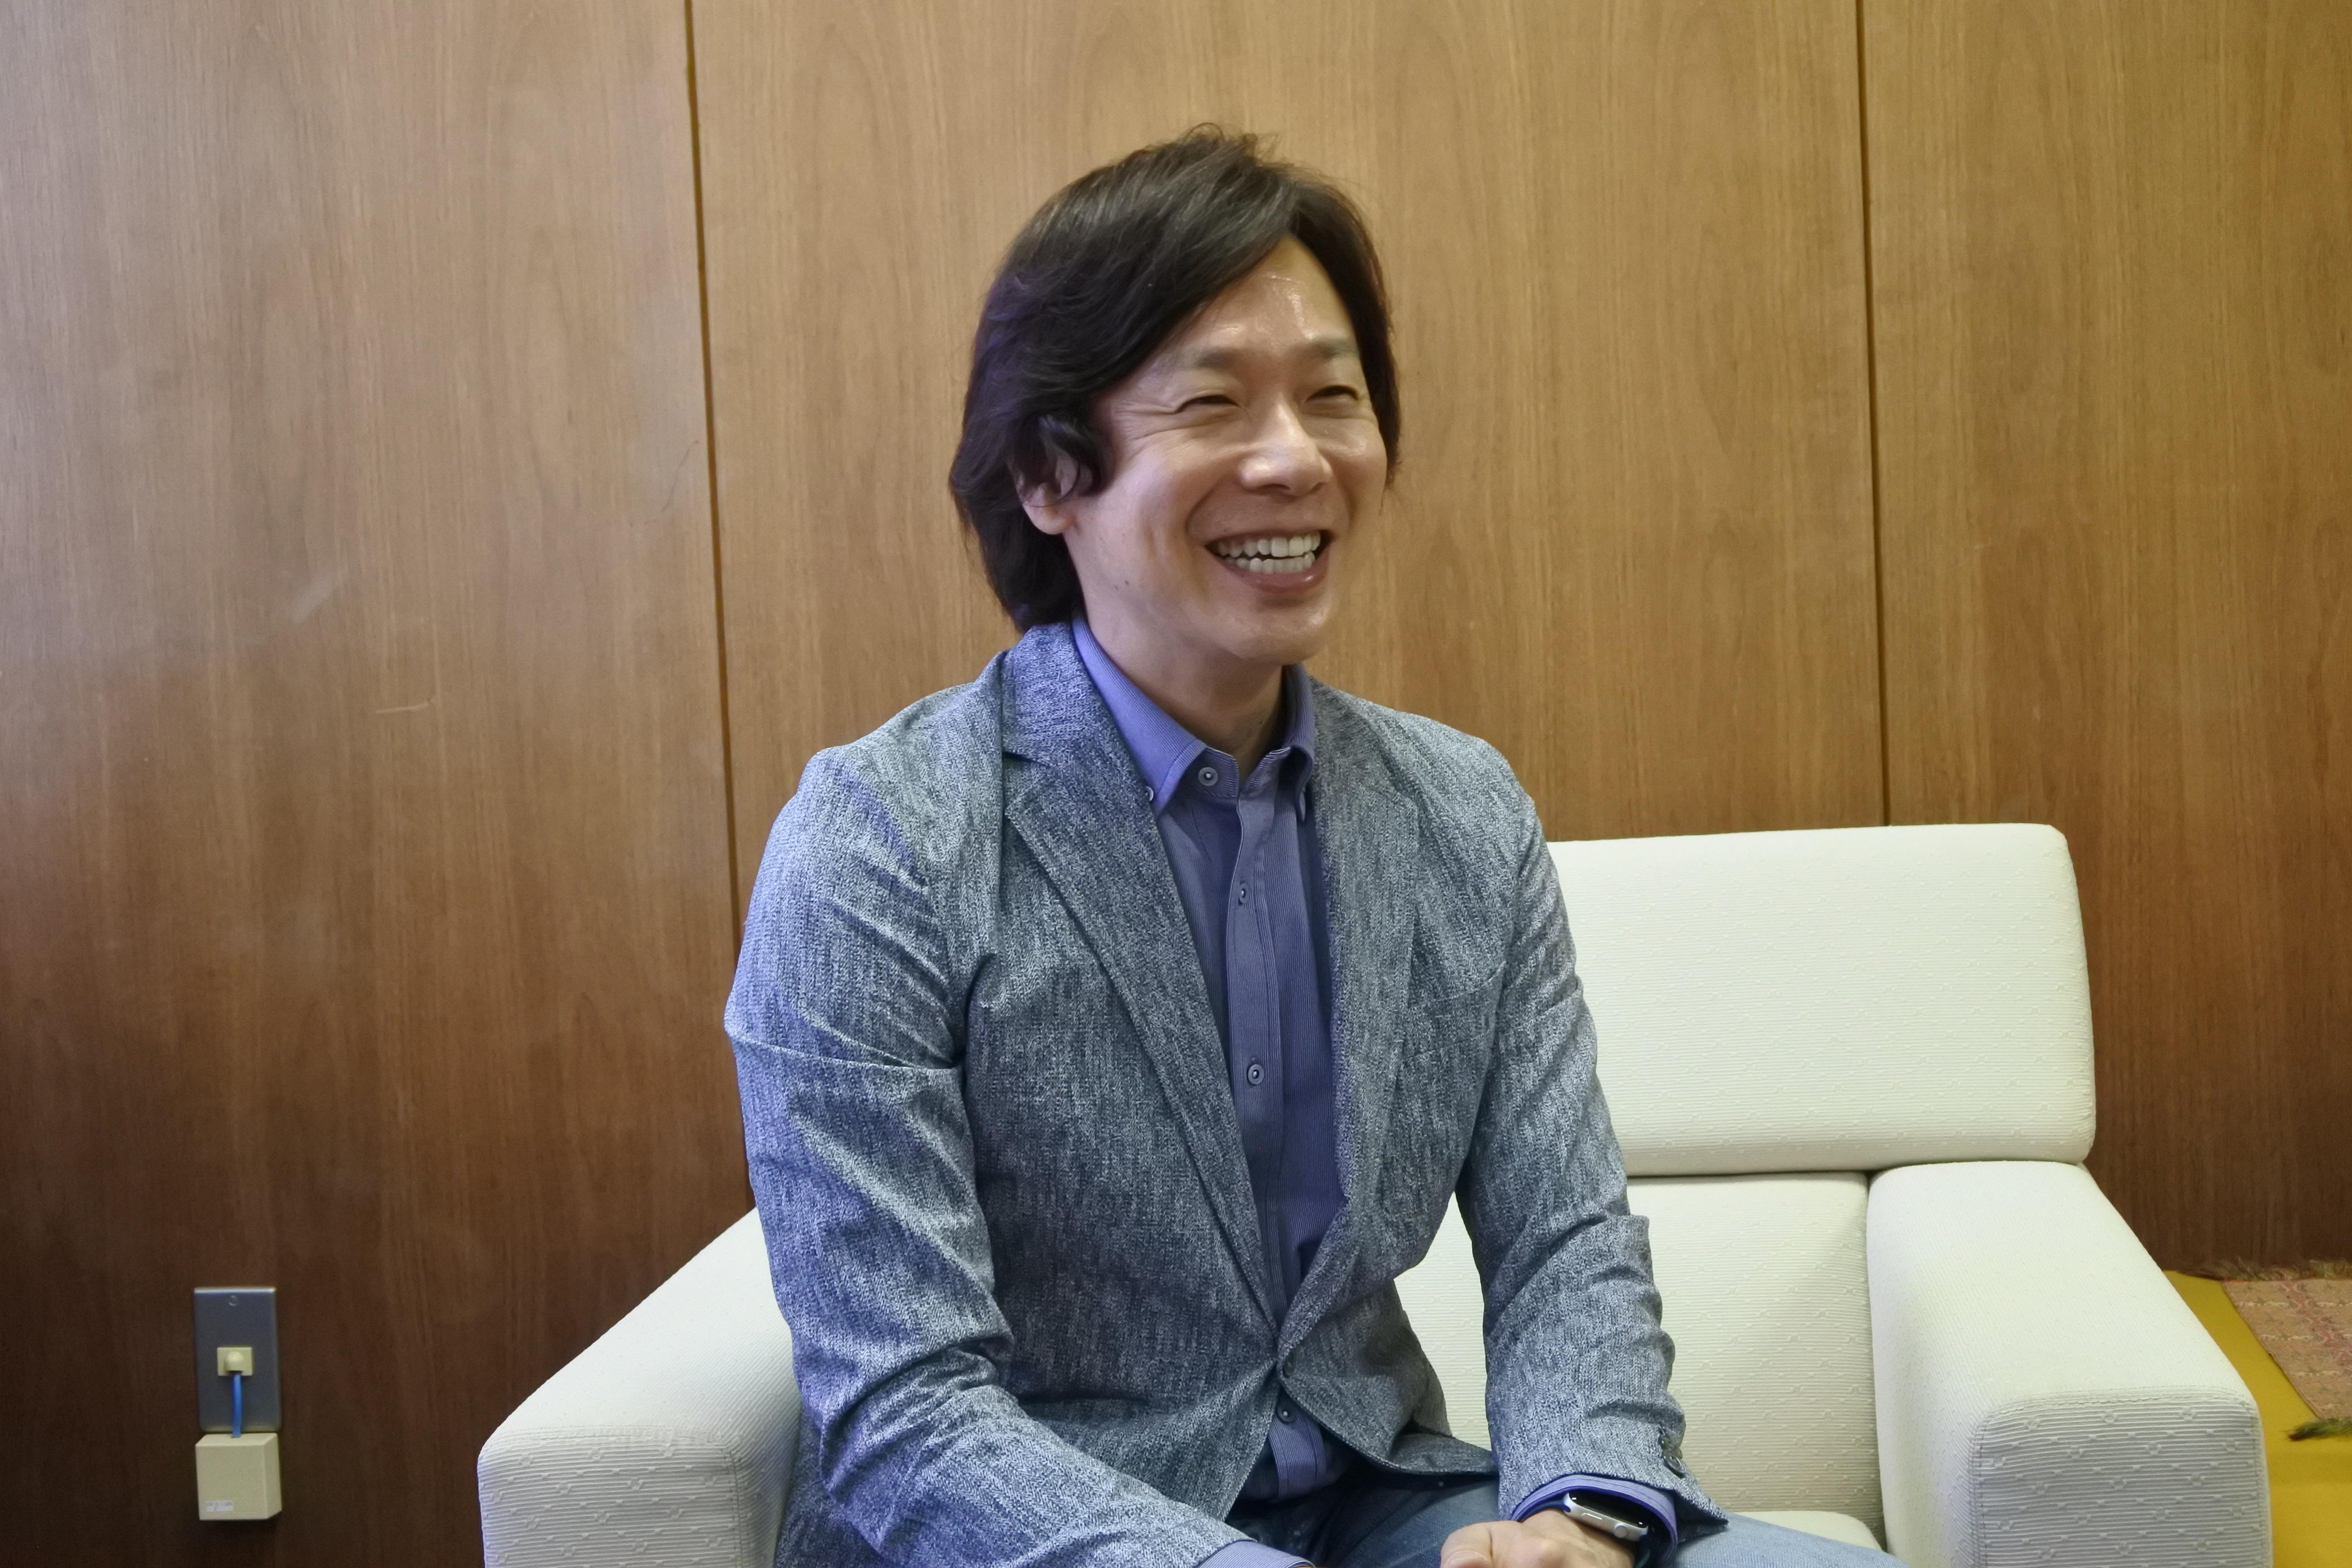 テレビでおなじみの笑顔を見せる佐藤弘道特任教授